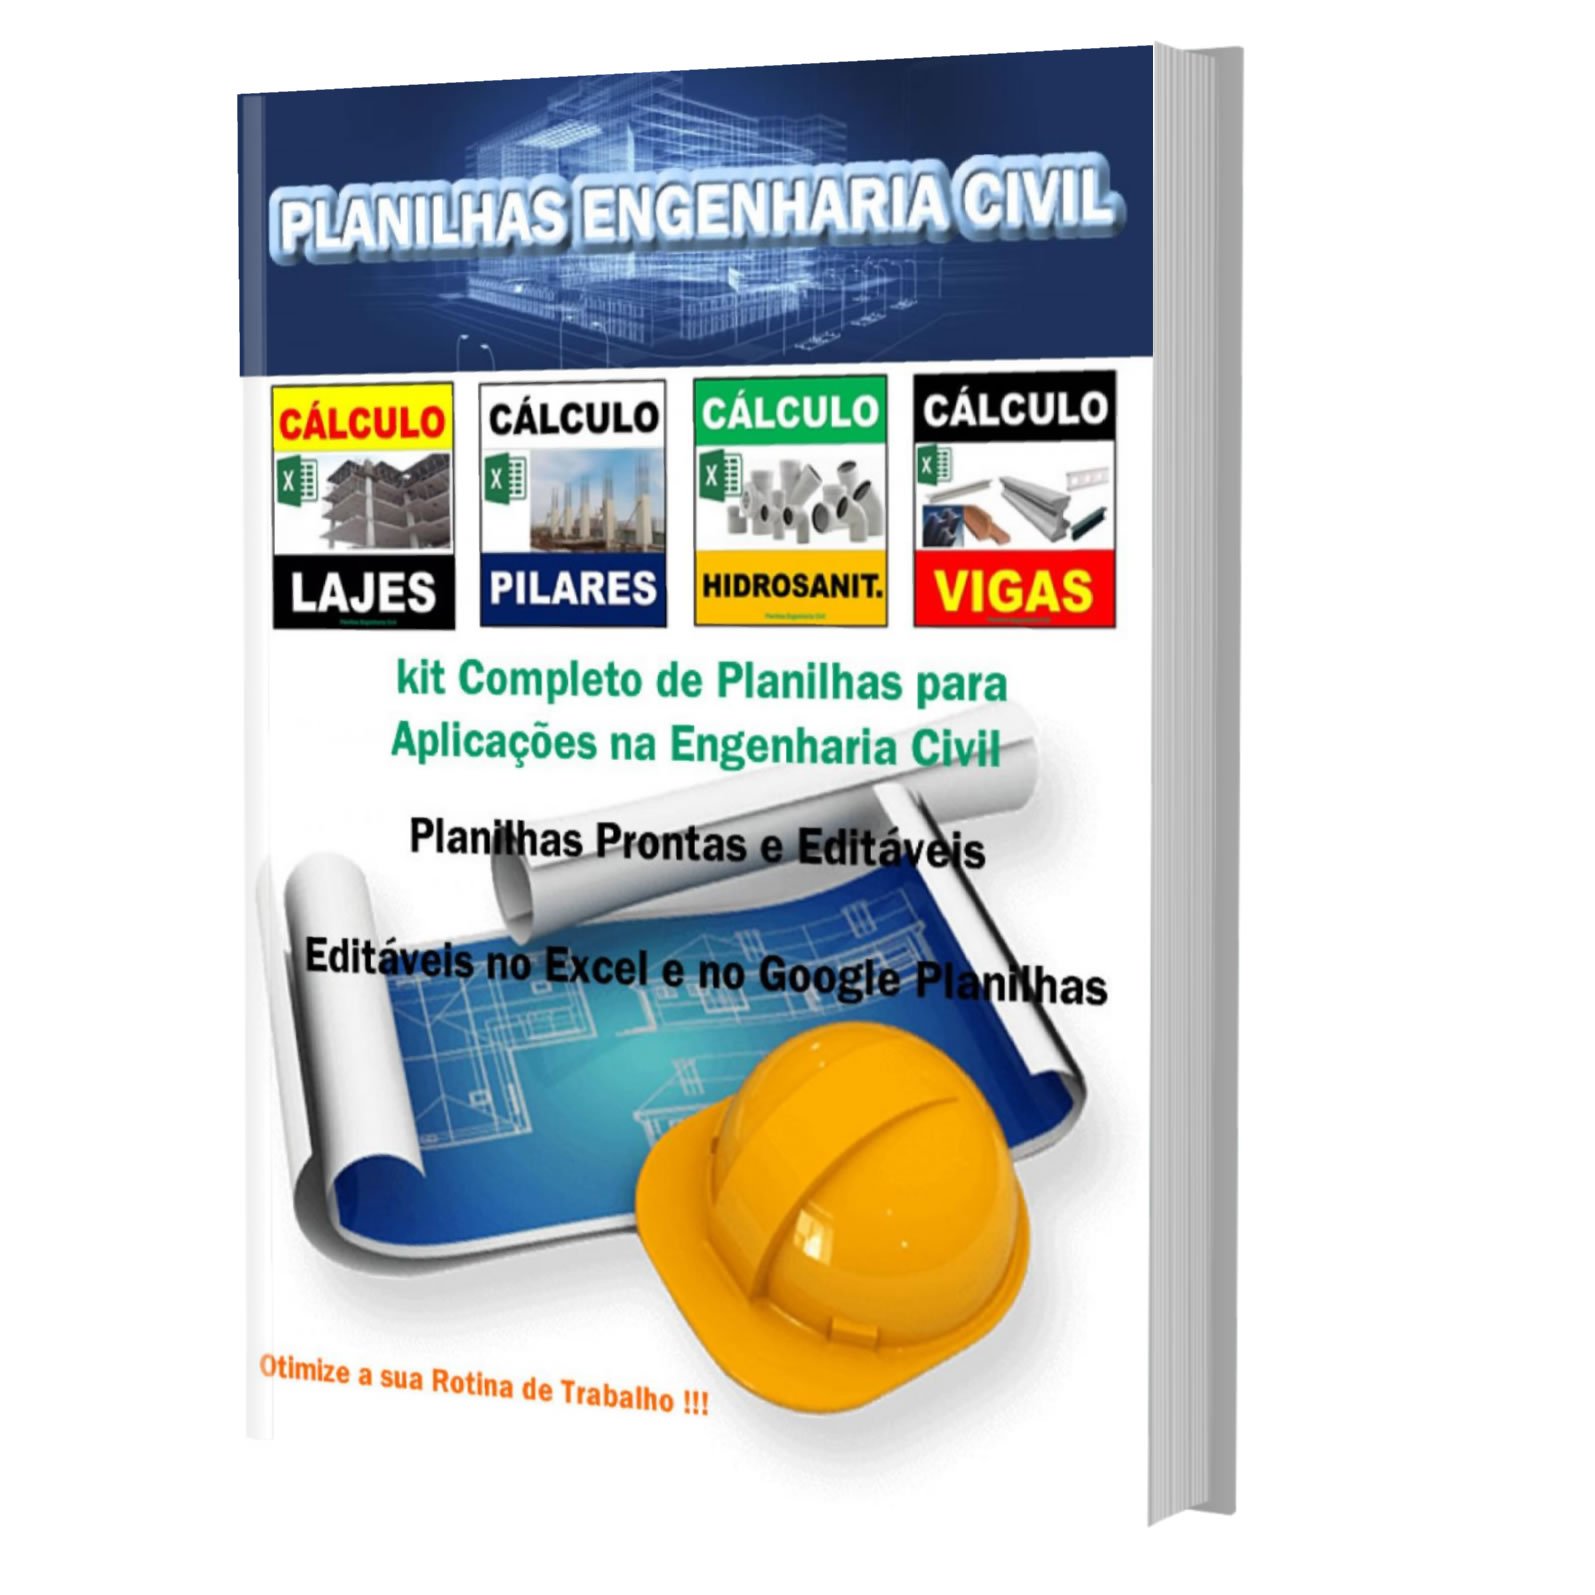 Planilhas Engenharia Civil E Book Plr Pronto 4552